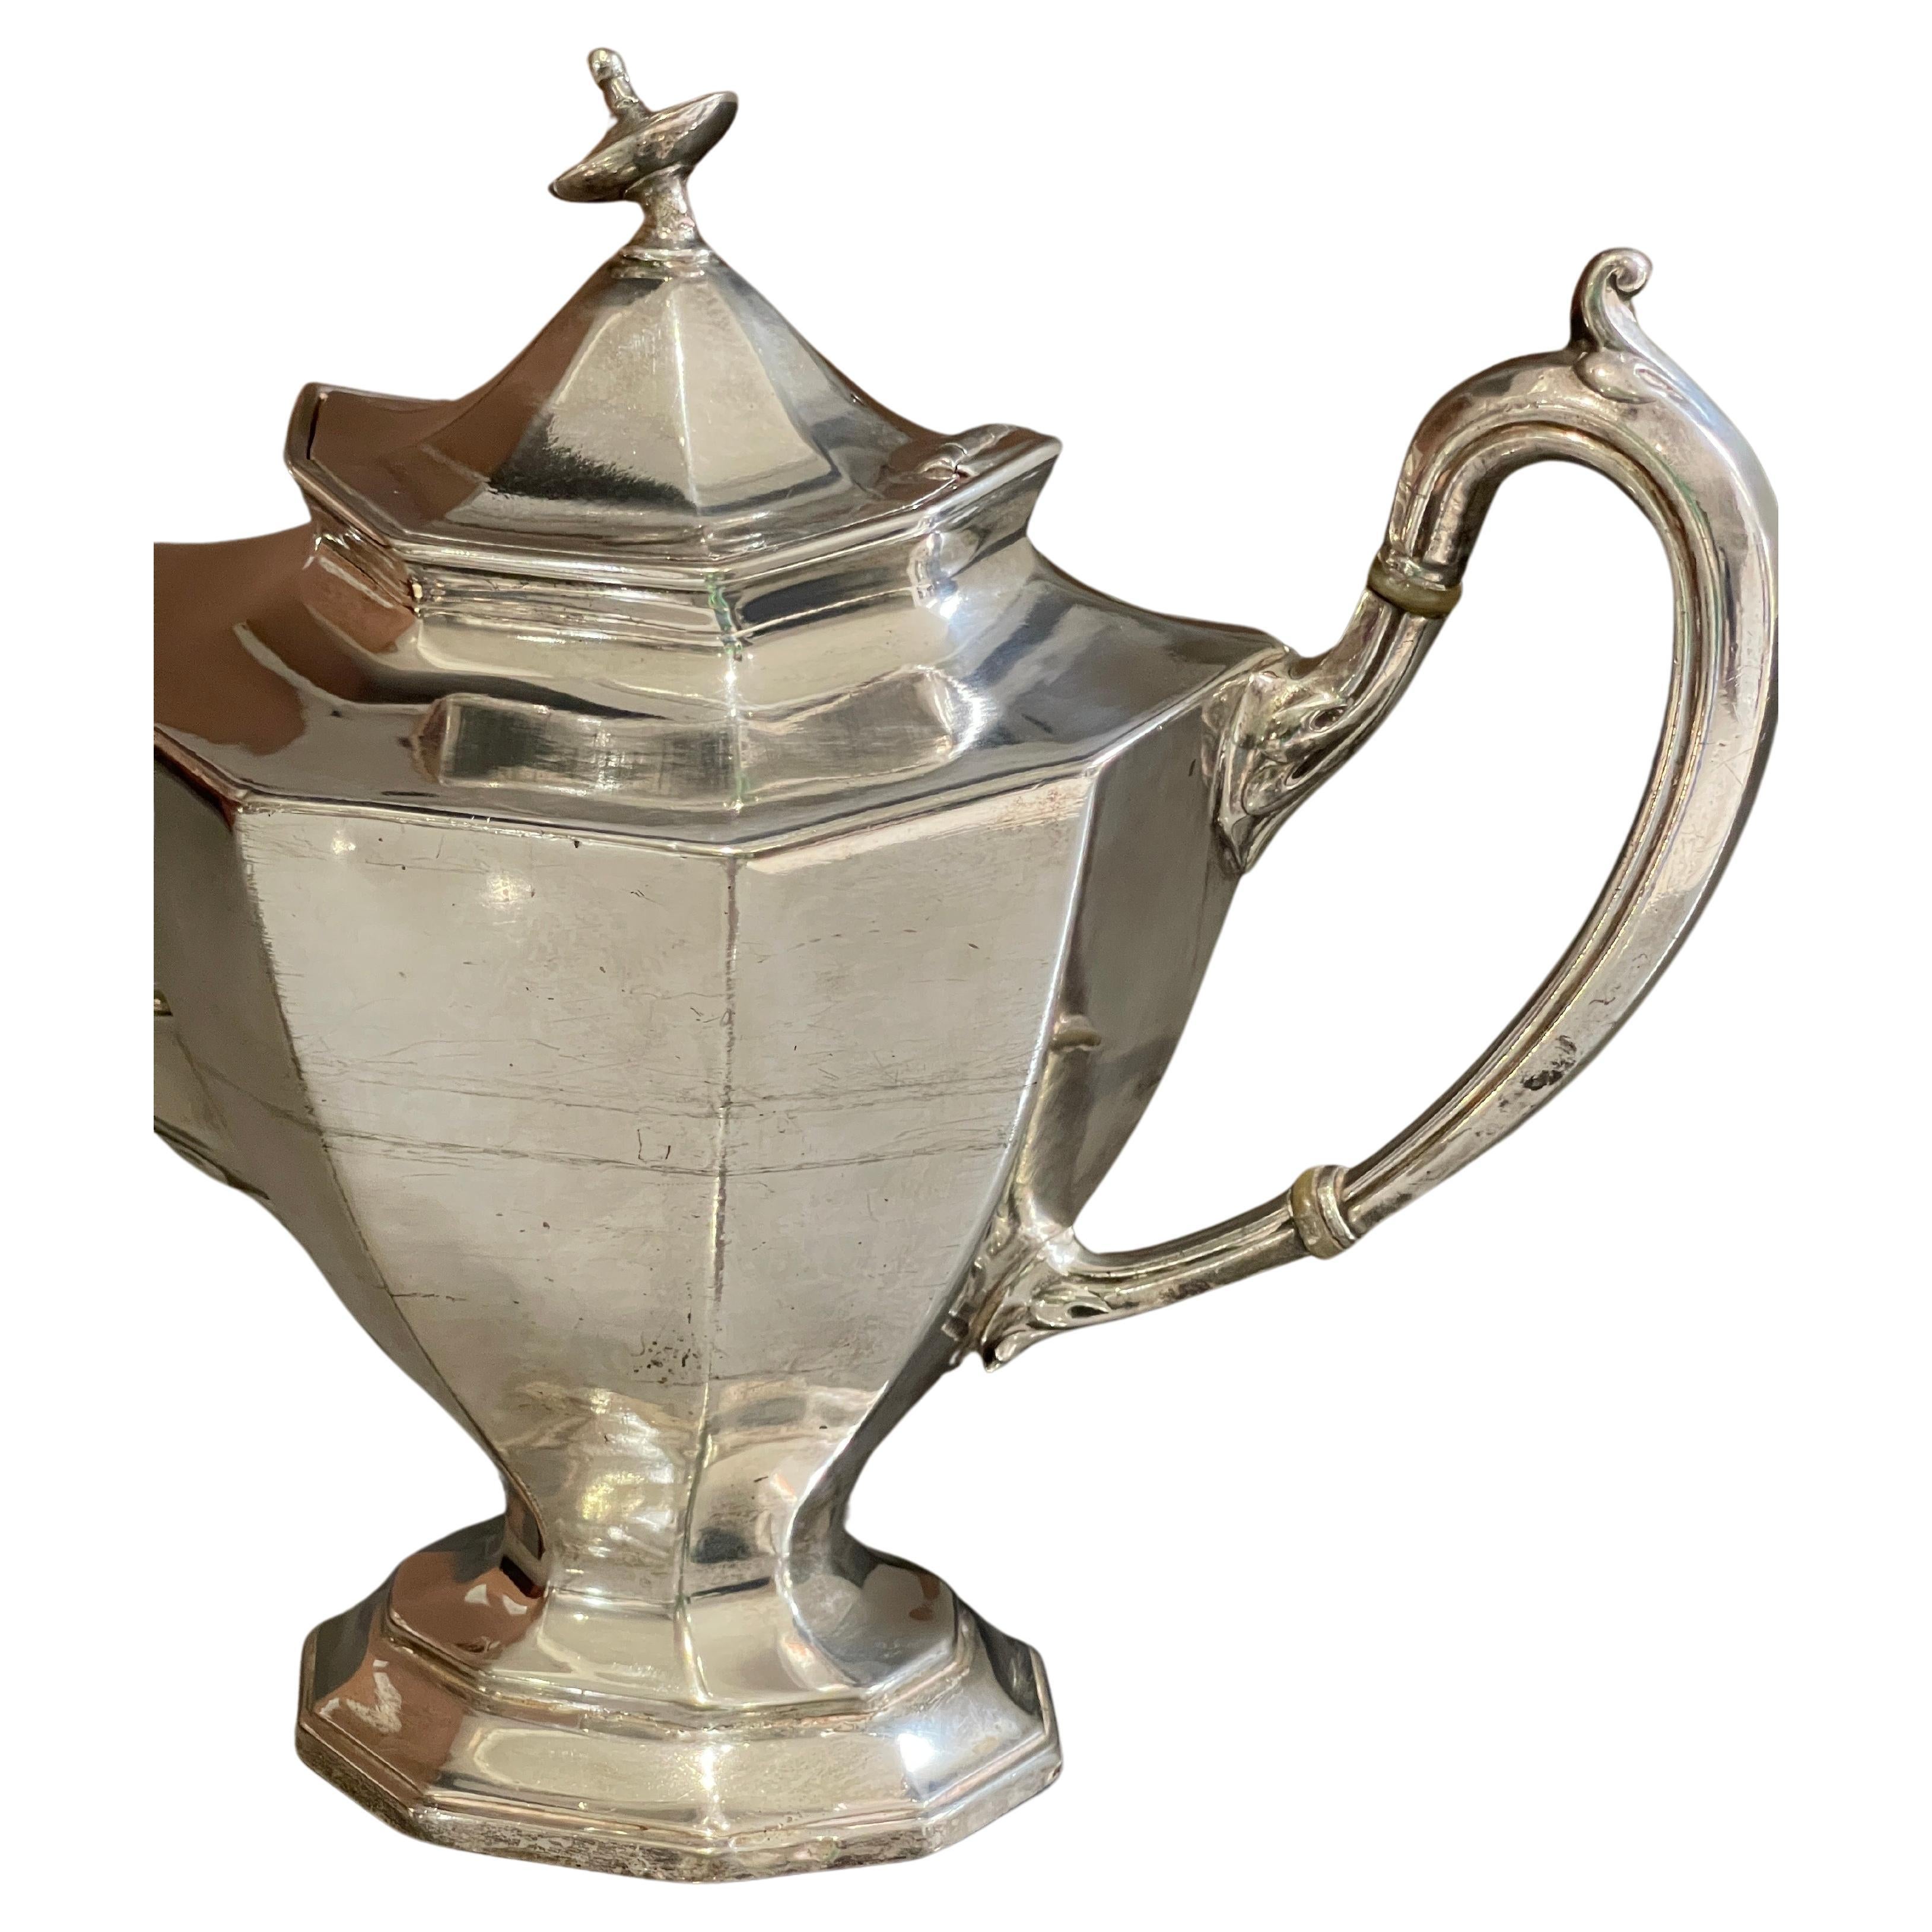 Ein antikes Art Deco Teeset und eine versilberte Teekanne, die wunderschön gestaltet sind und sich zum eleganten Servieren eignen. Mit gepresstem, gegossenem und ziseliertem gewölbtem Deckel.
Kaffeekanne, Höhe 22 cm. Signiert von Reed & Barton.
Gut